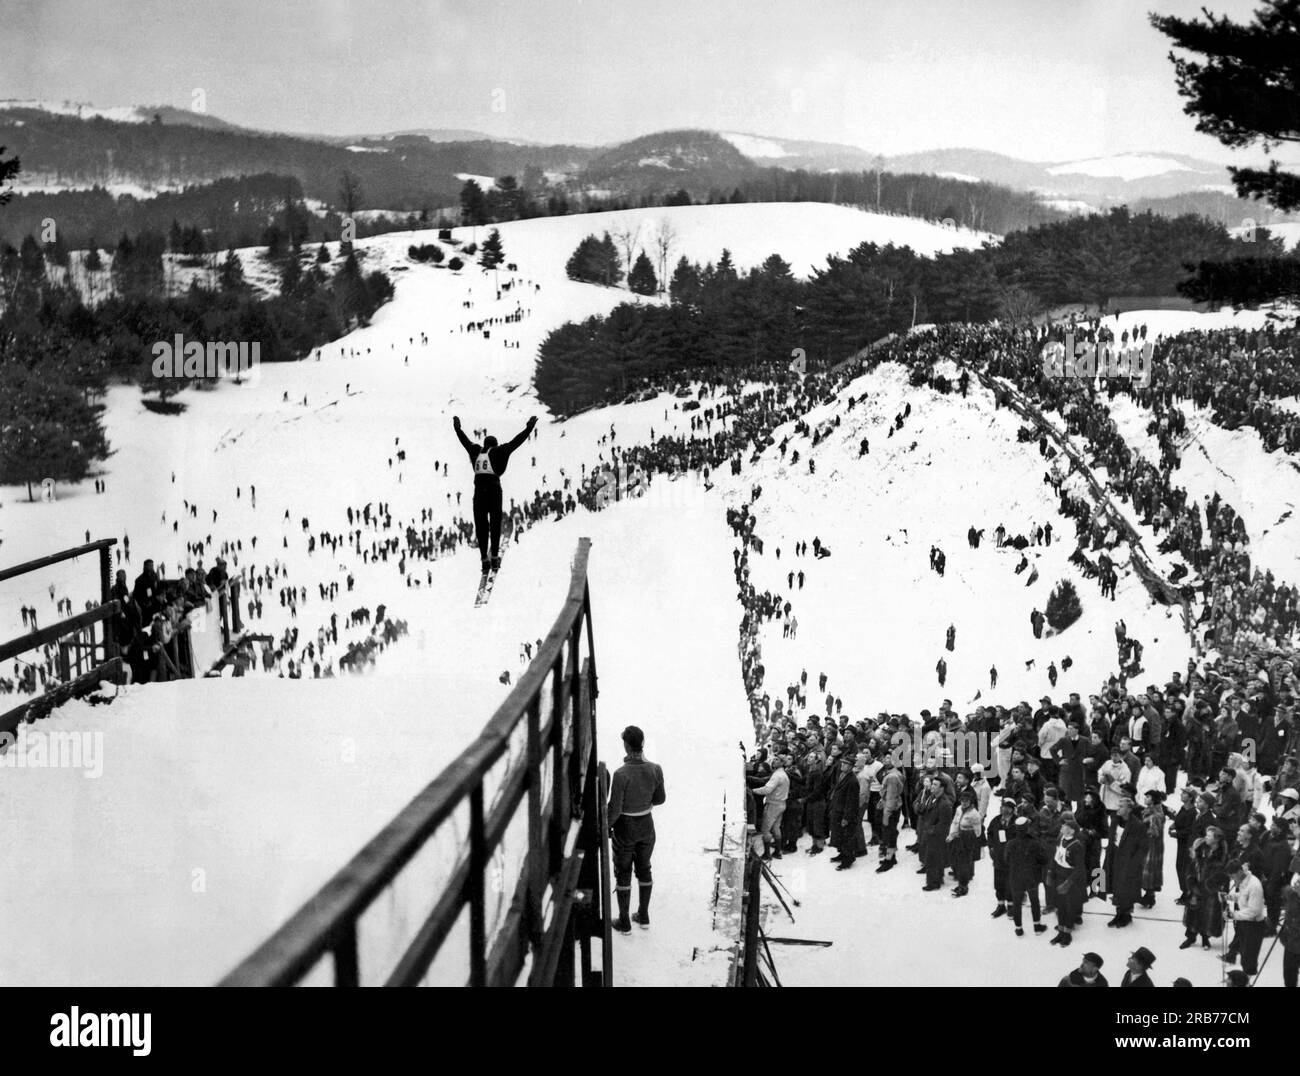 Hanover, New Hampshire: 6 febbraio 1937. Vista del salto con gli sci durante l'annuale Carnevale invernale del Dartmouth Outing Club. Qui è mostrato Jarvis Schauffler dell'Amherst Outing Club che faceva parte della squadra di sci alpino statunitense alle Olimpiadi del 1936. Foto Stock